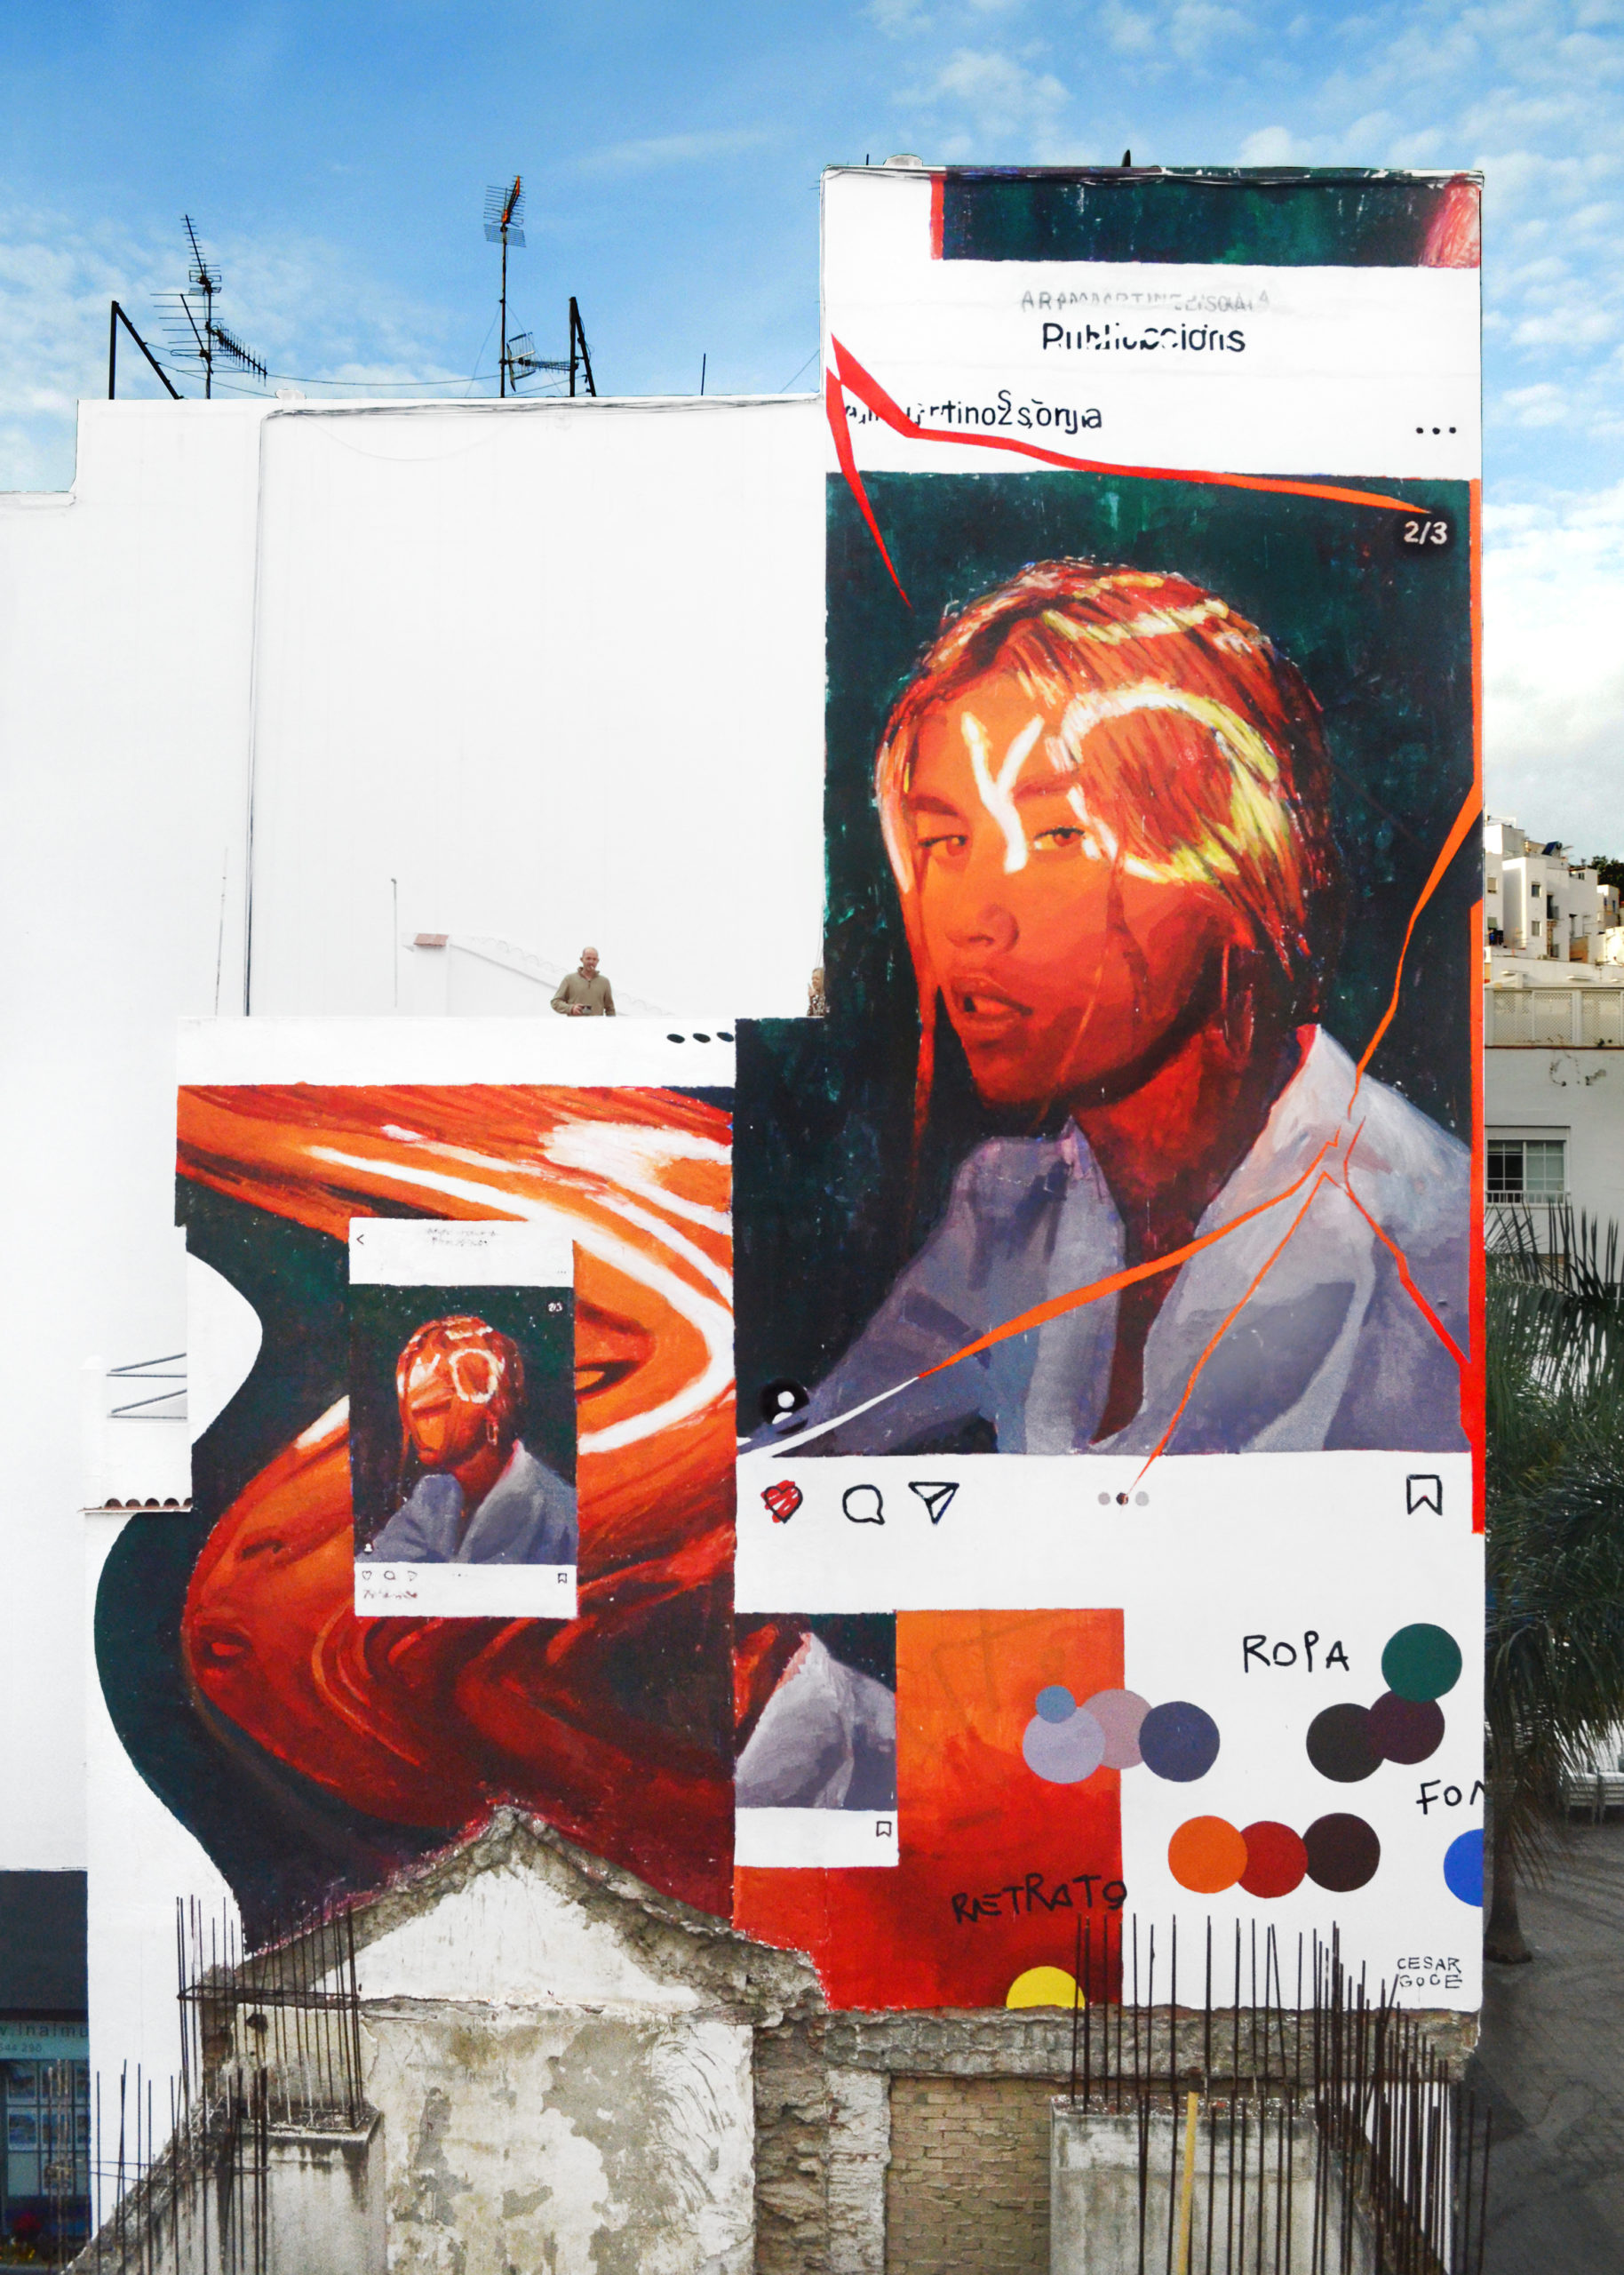 cesar goce arte urbano mural identidad rotos distorion arte contemporaneo